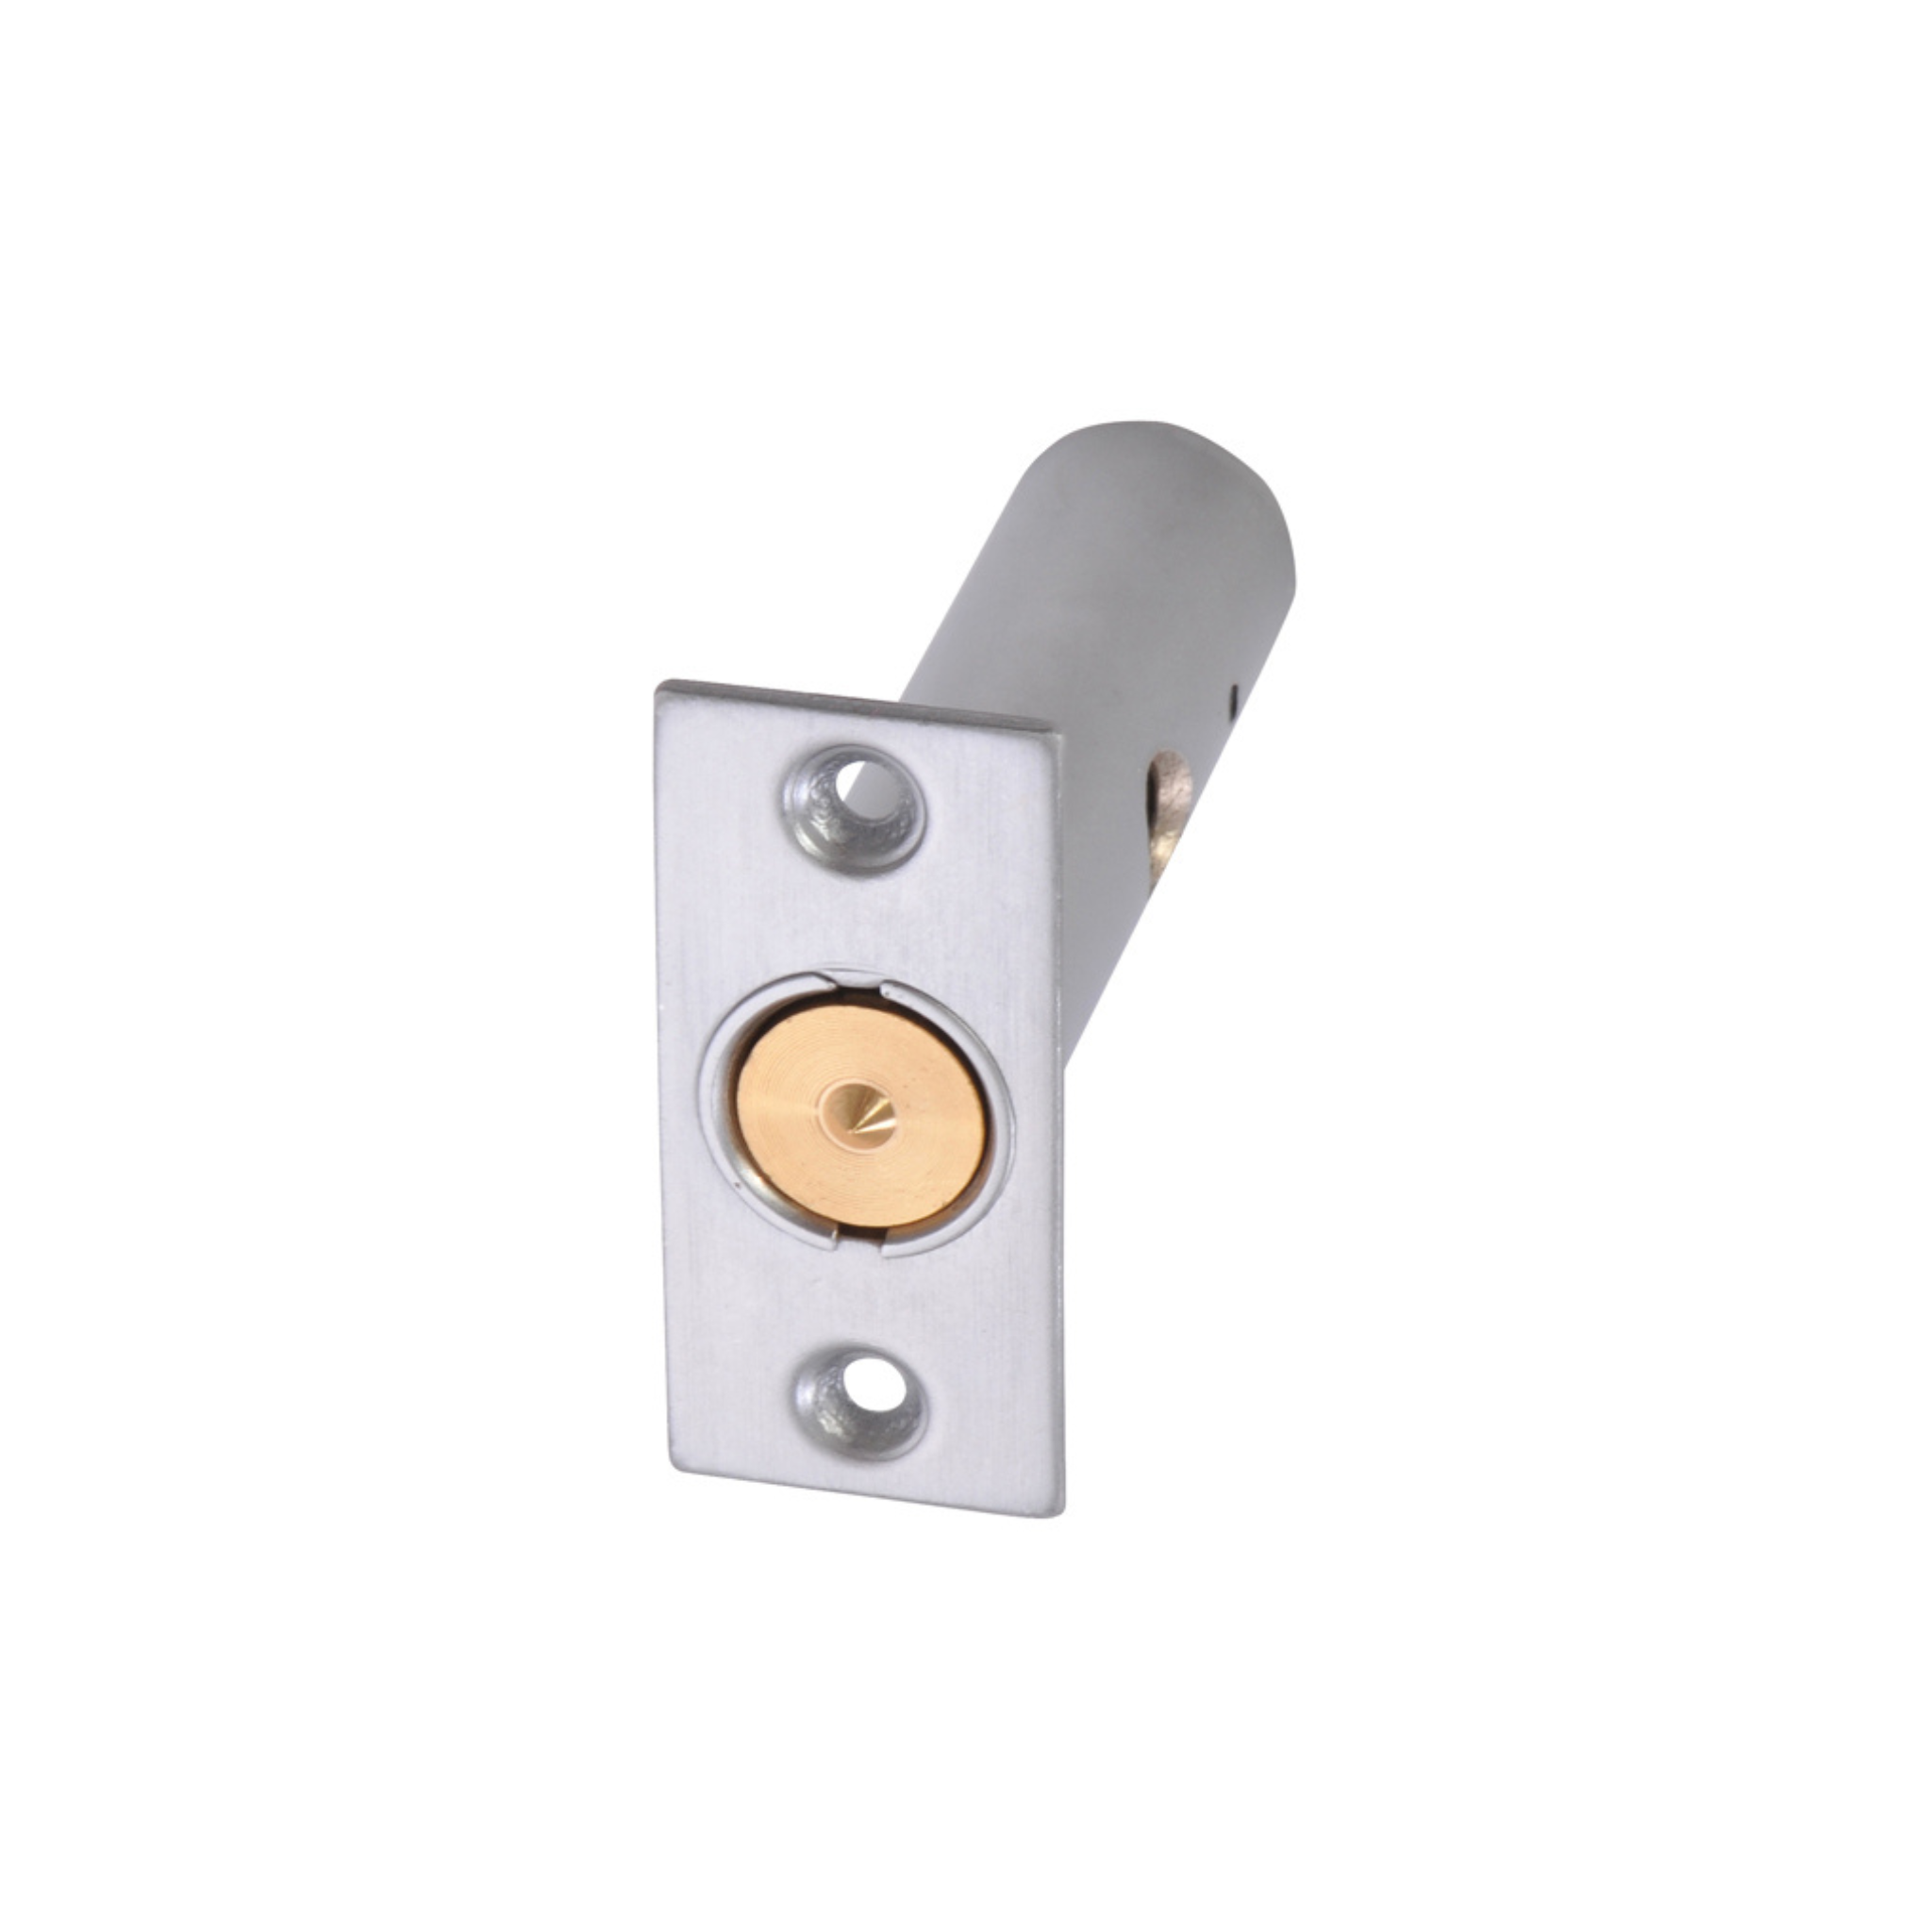 DMB-SS-021, Door Bolt with Key, 40mm (l) x 70mm (w) x 20mm (t), Stainless Steel, DORMAKABA